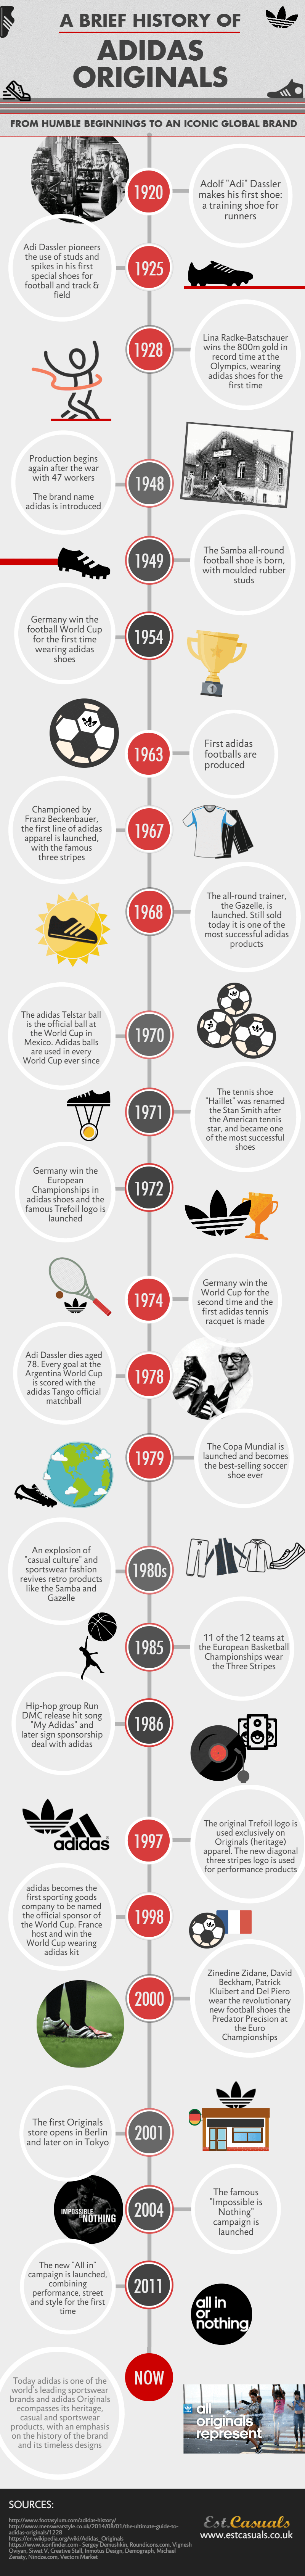 adidas background history